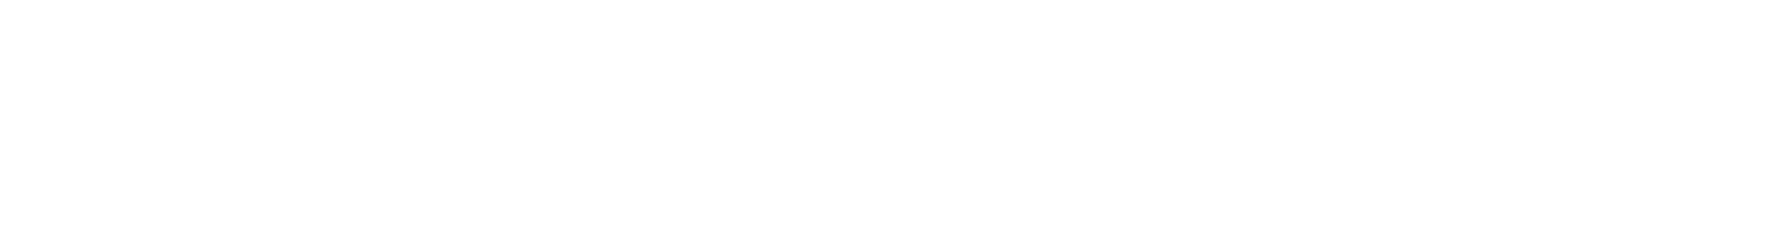 Telesat logo large for dark backgrounds (transparent PNG)